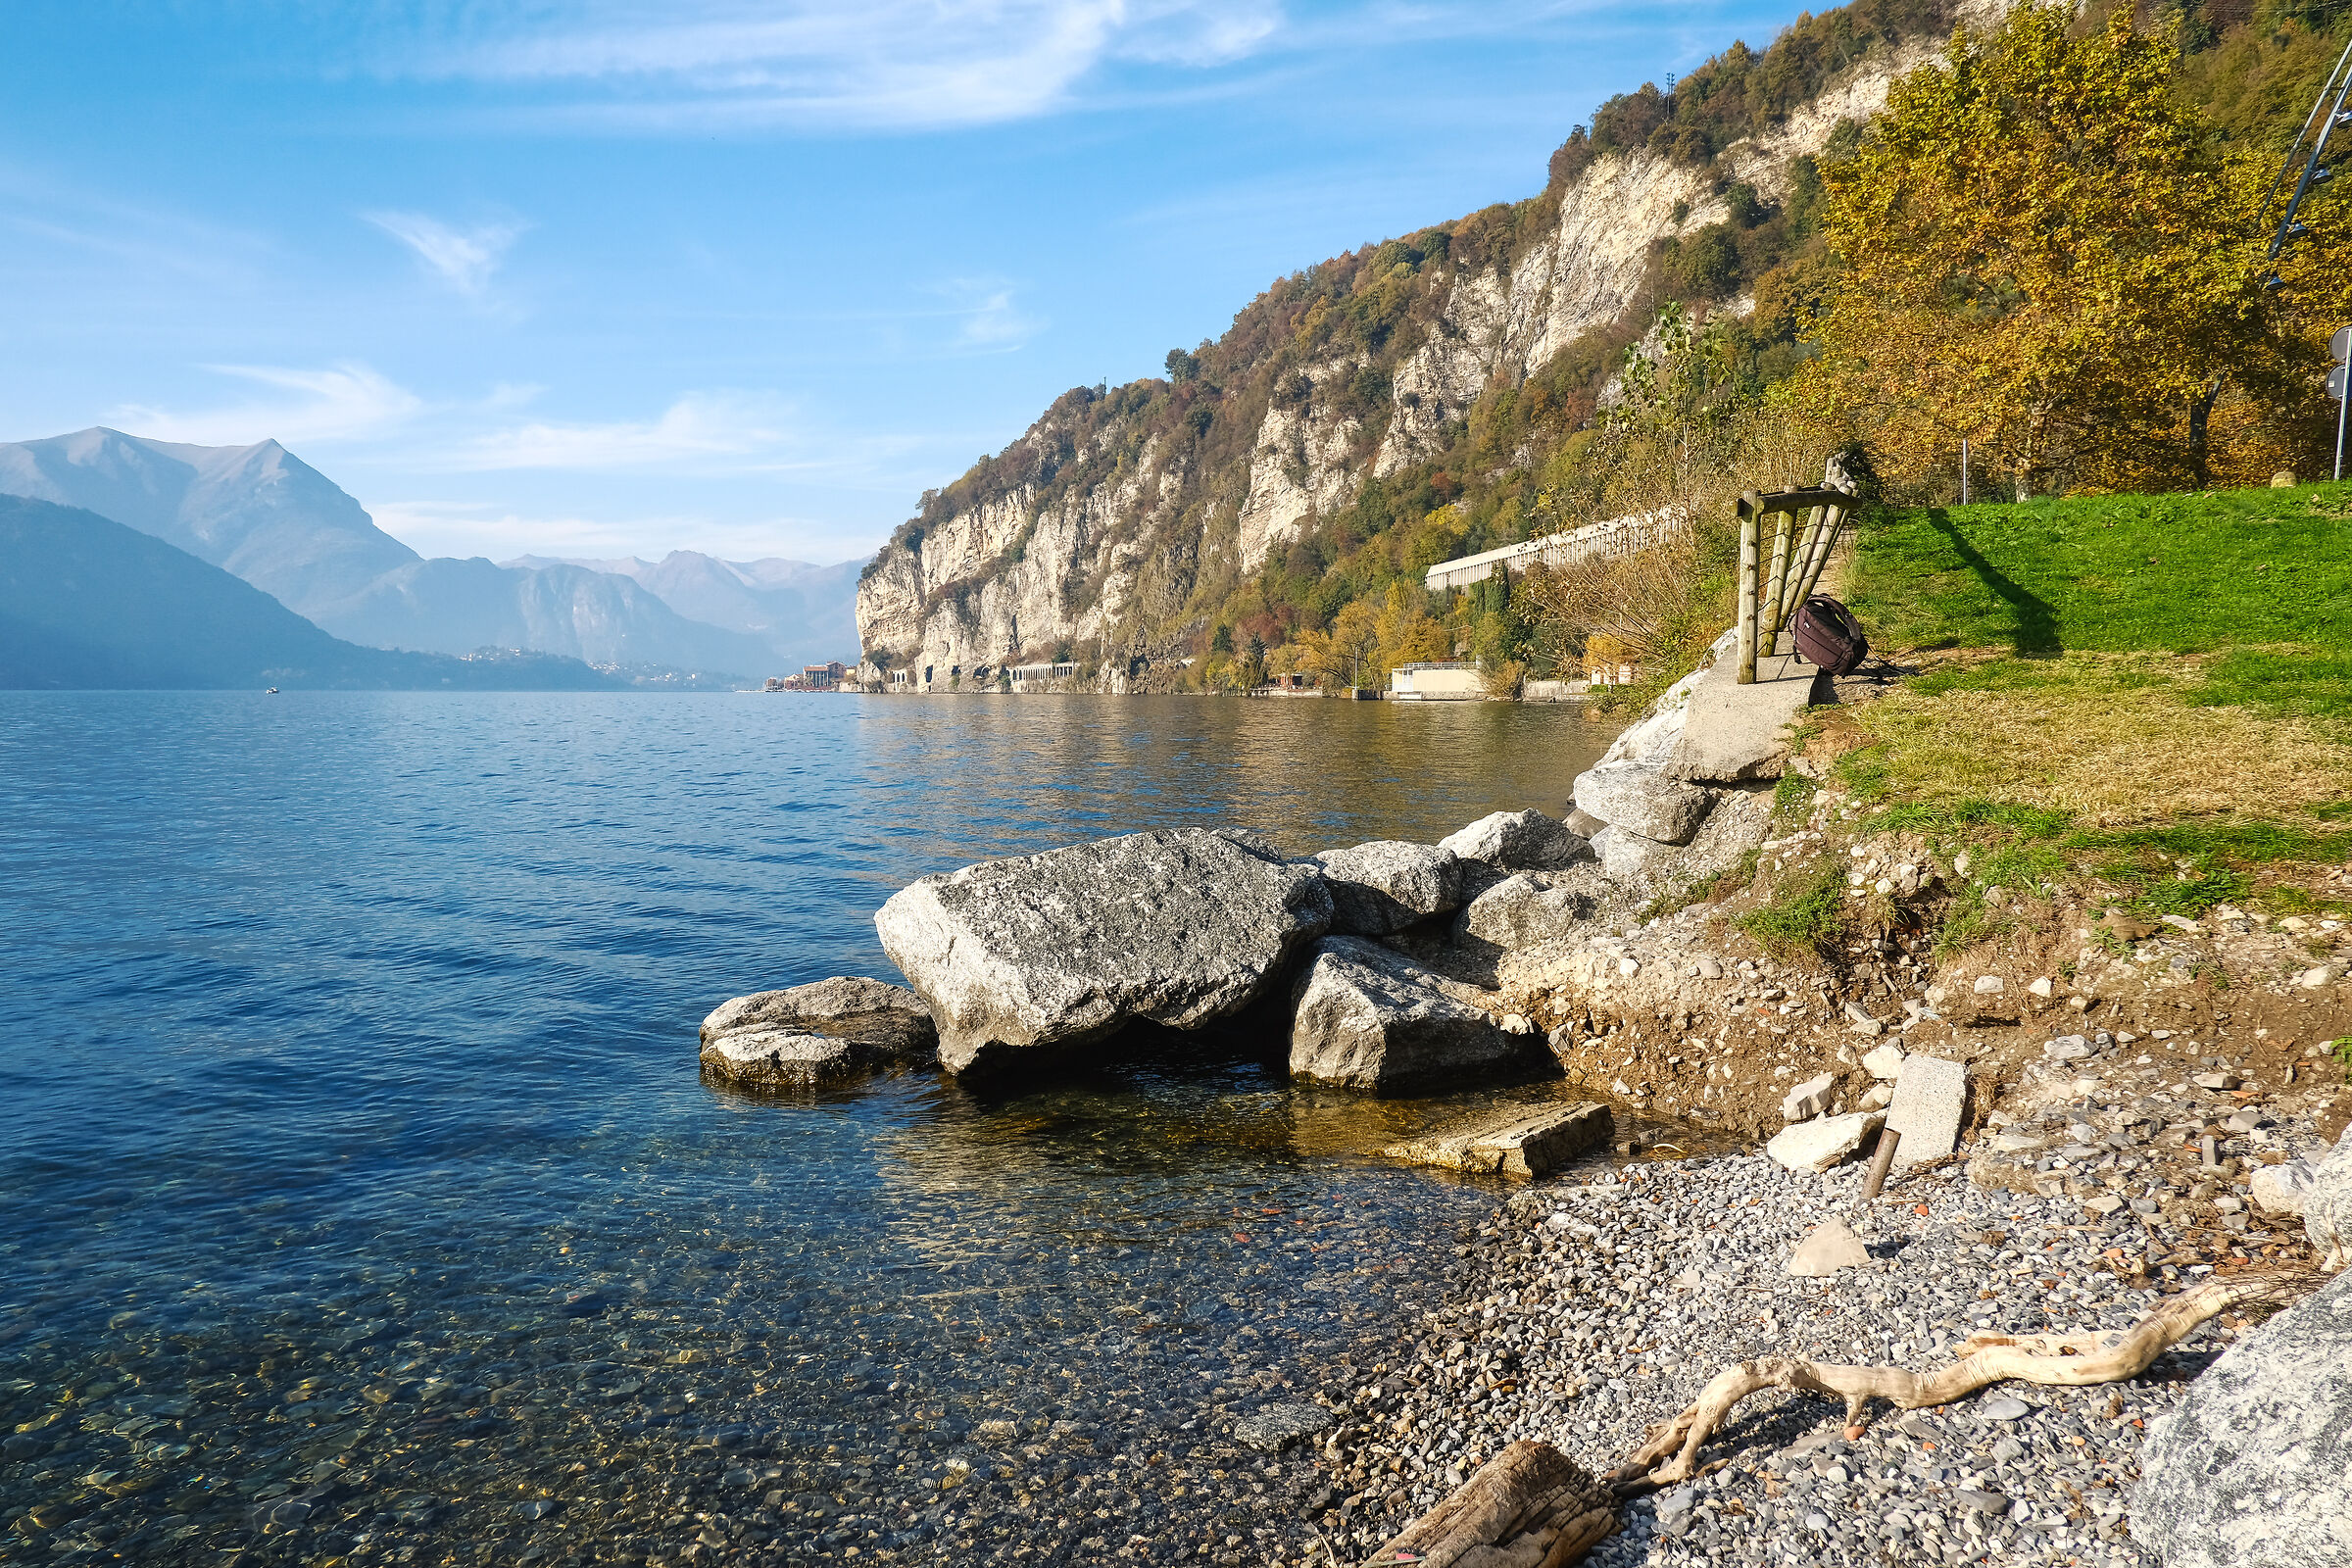 Olcio - Lake Como, small wanderers...